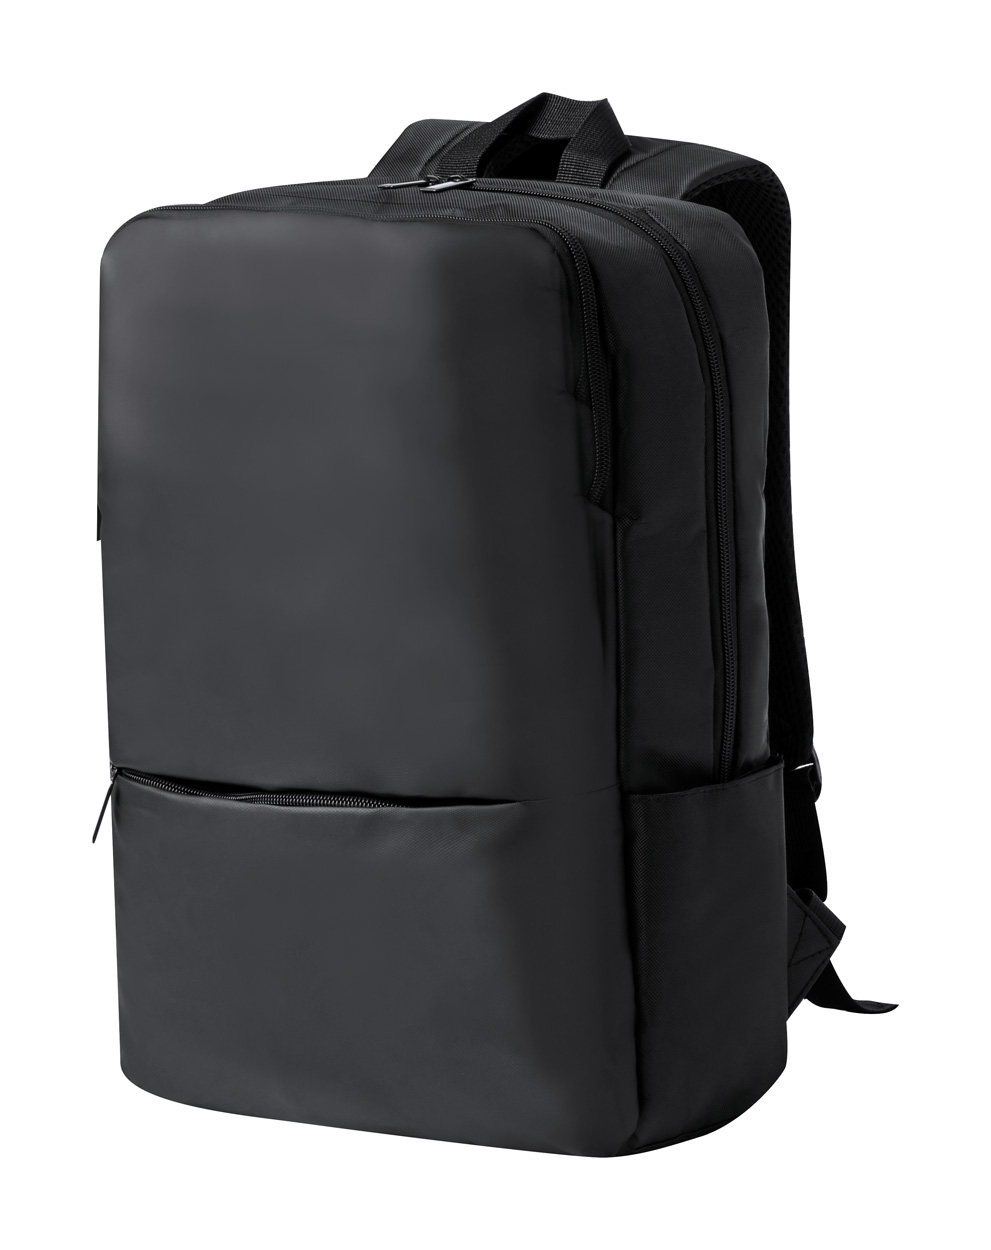 Promo  Sarek backpack